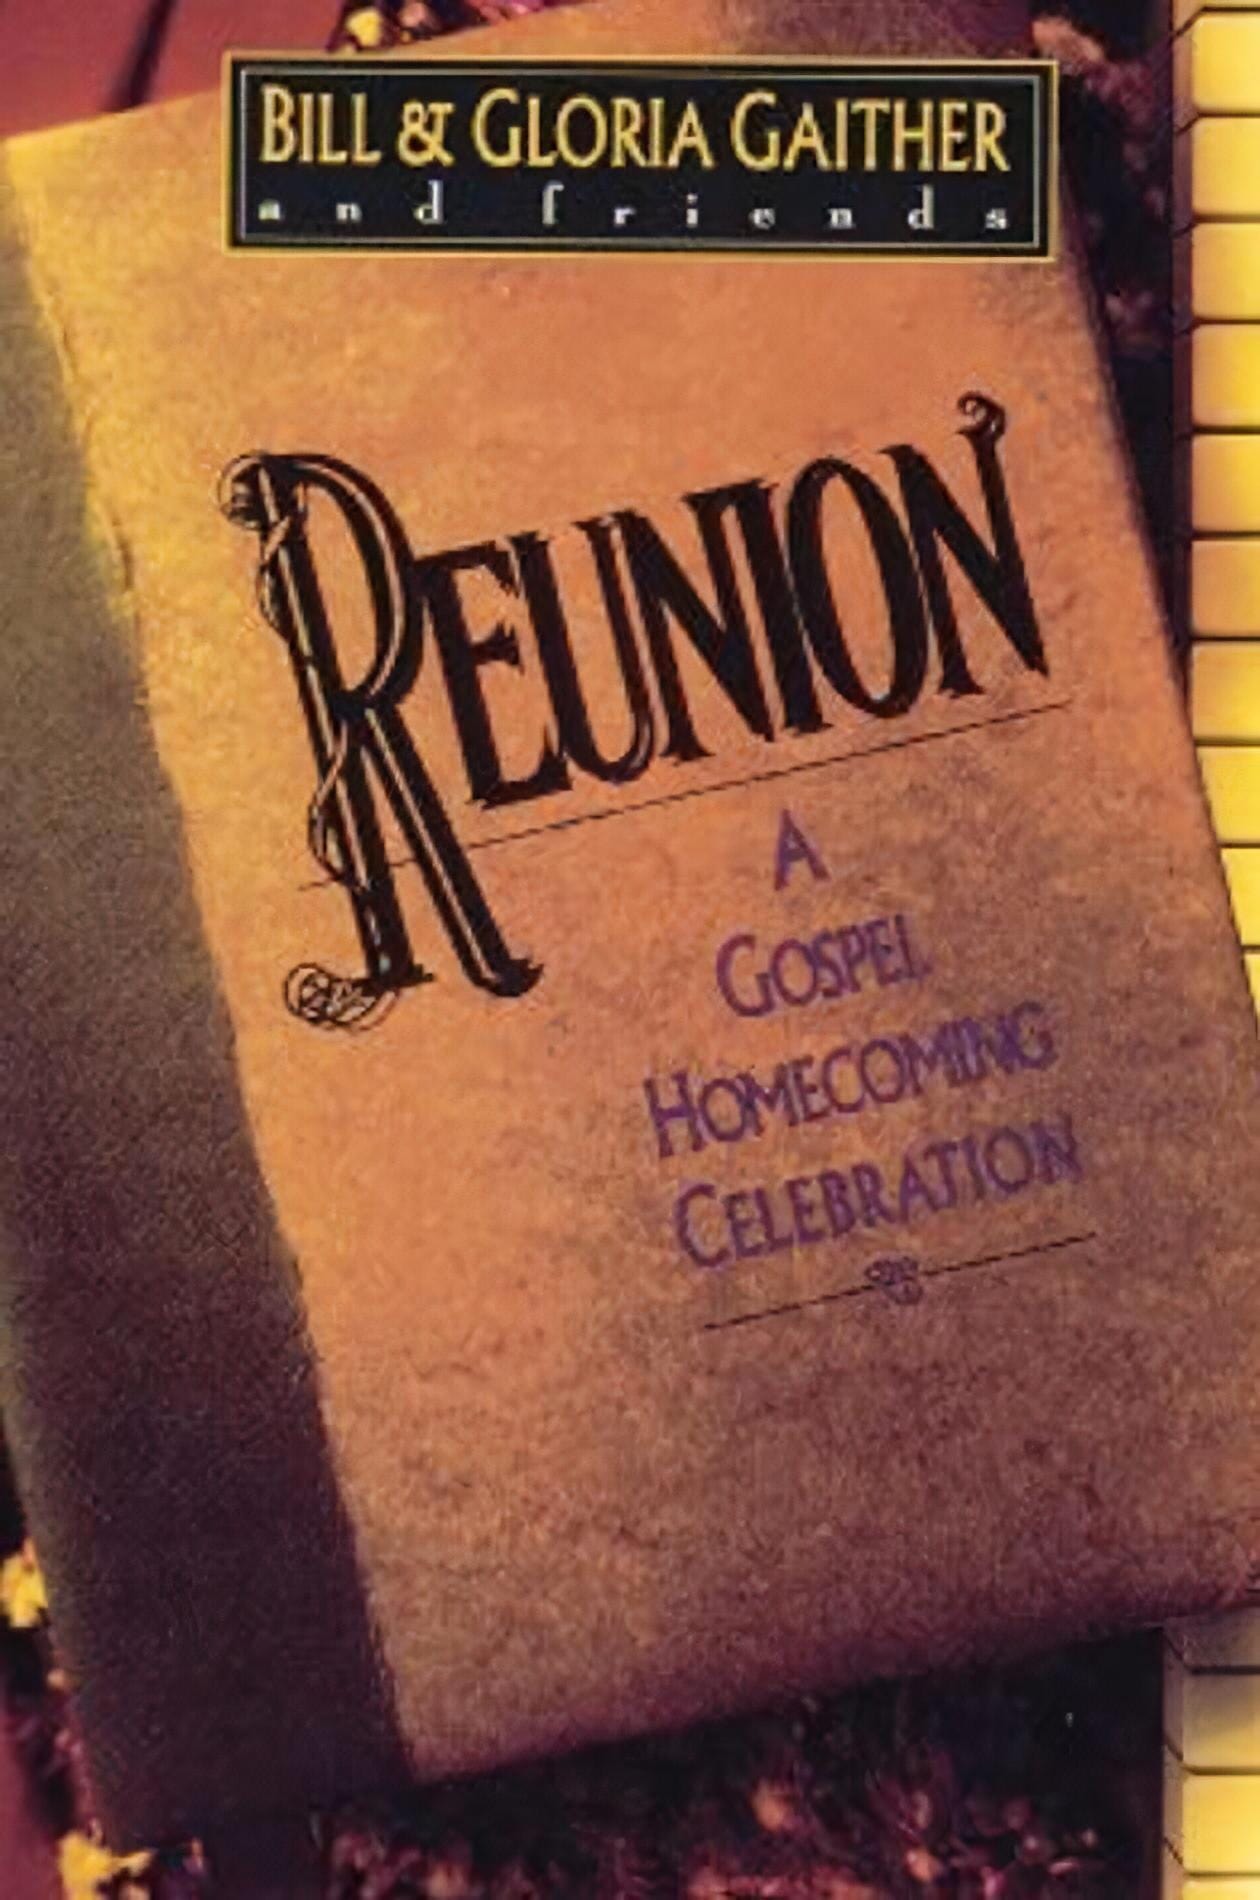 Reunion: A Gospel Homecoming Celebration